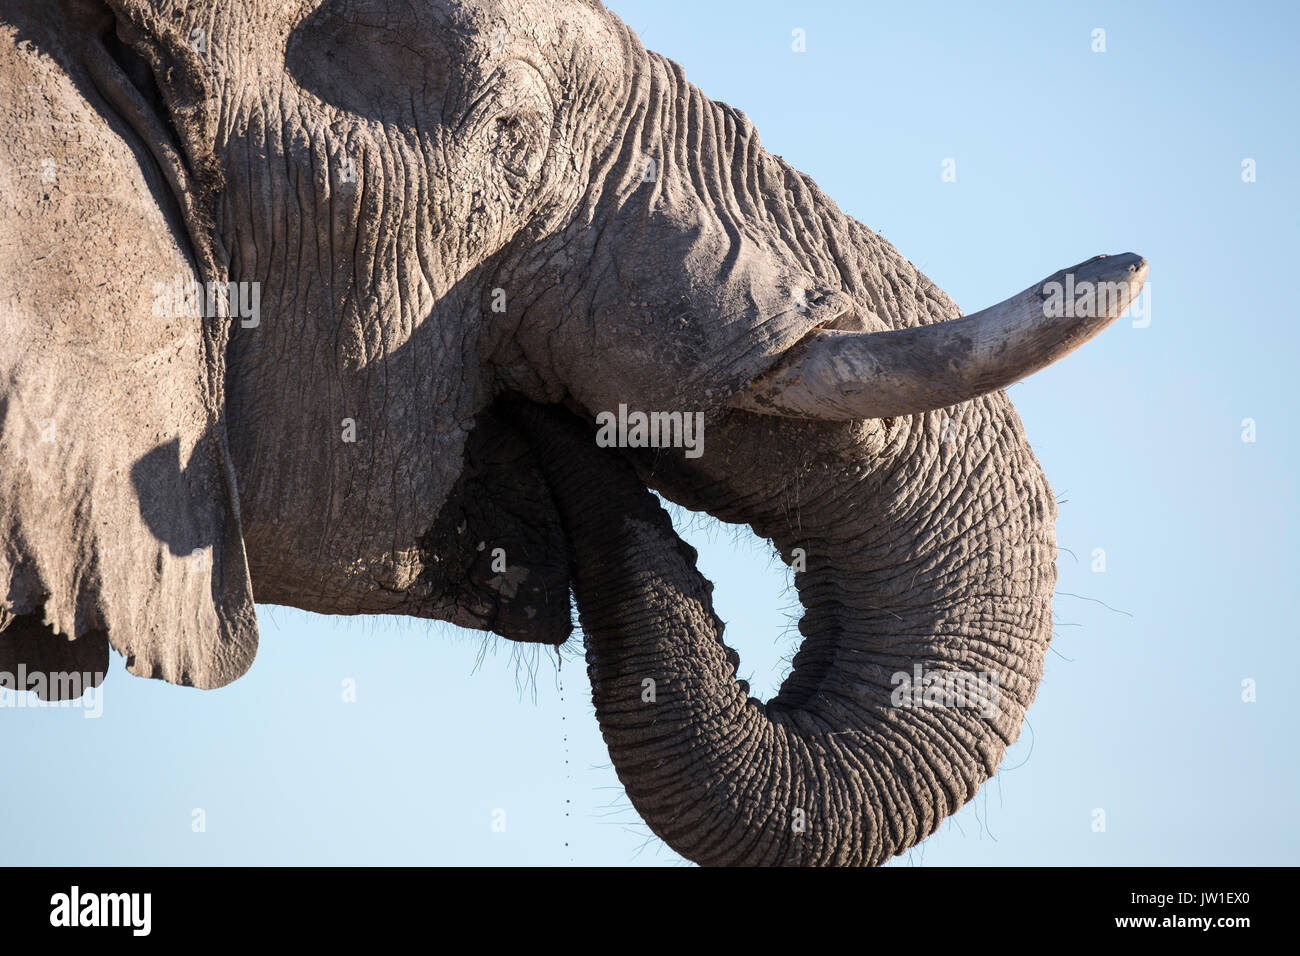 El elefante (Loxodonta africana) bull cubiertos en el polvo gris pálido típico de la zona Nxai Pan Foto de stock